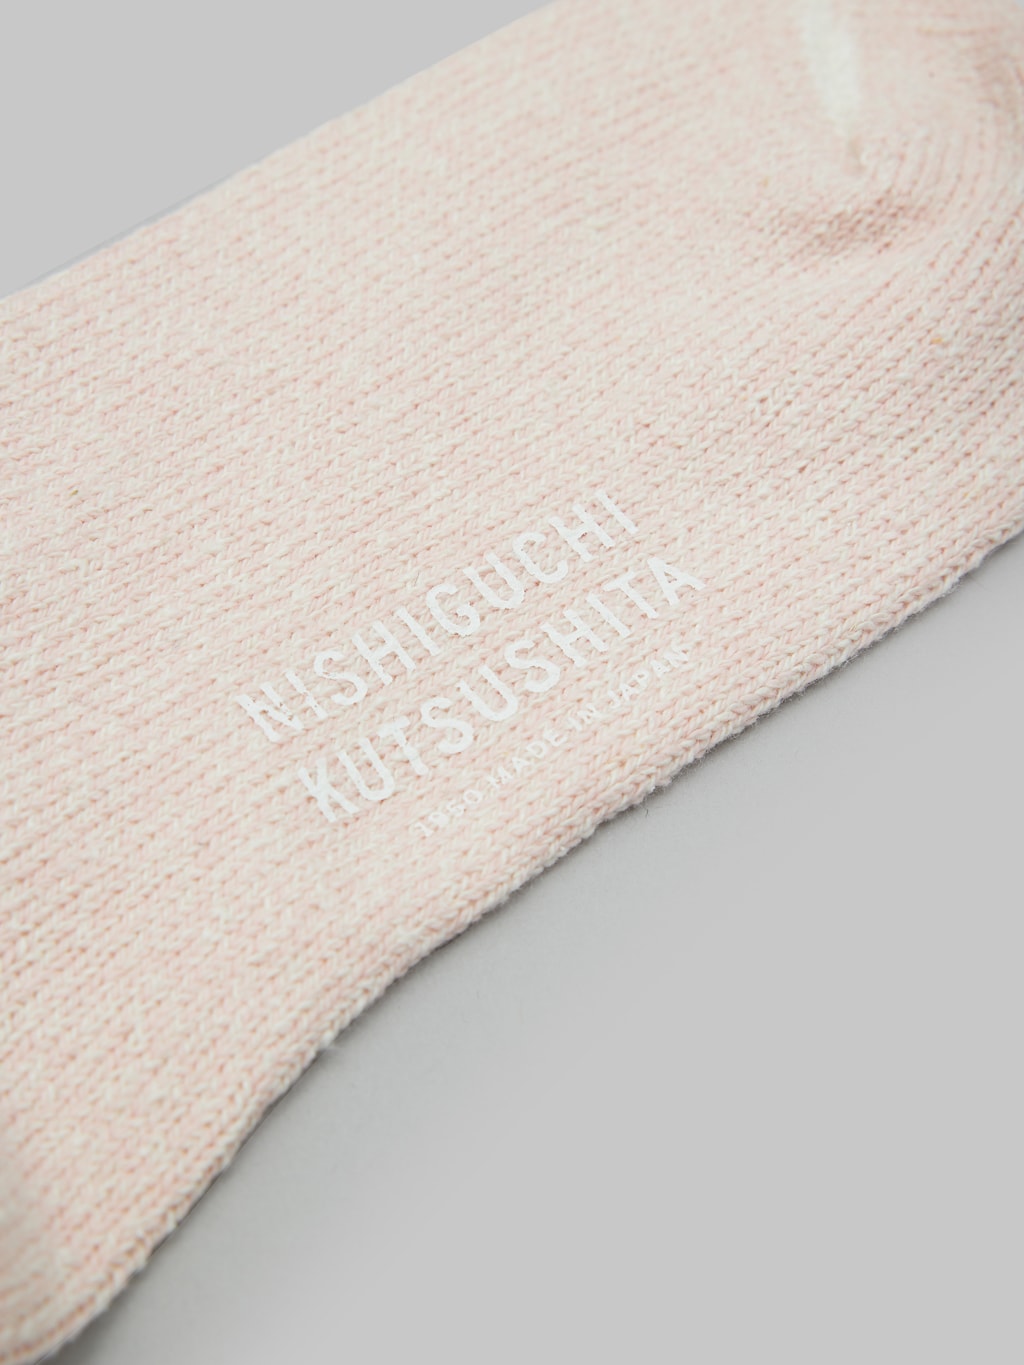 nishiguchi kutsushita silk cotton socks pink texture